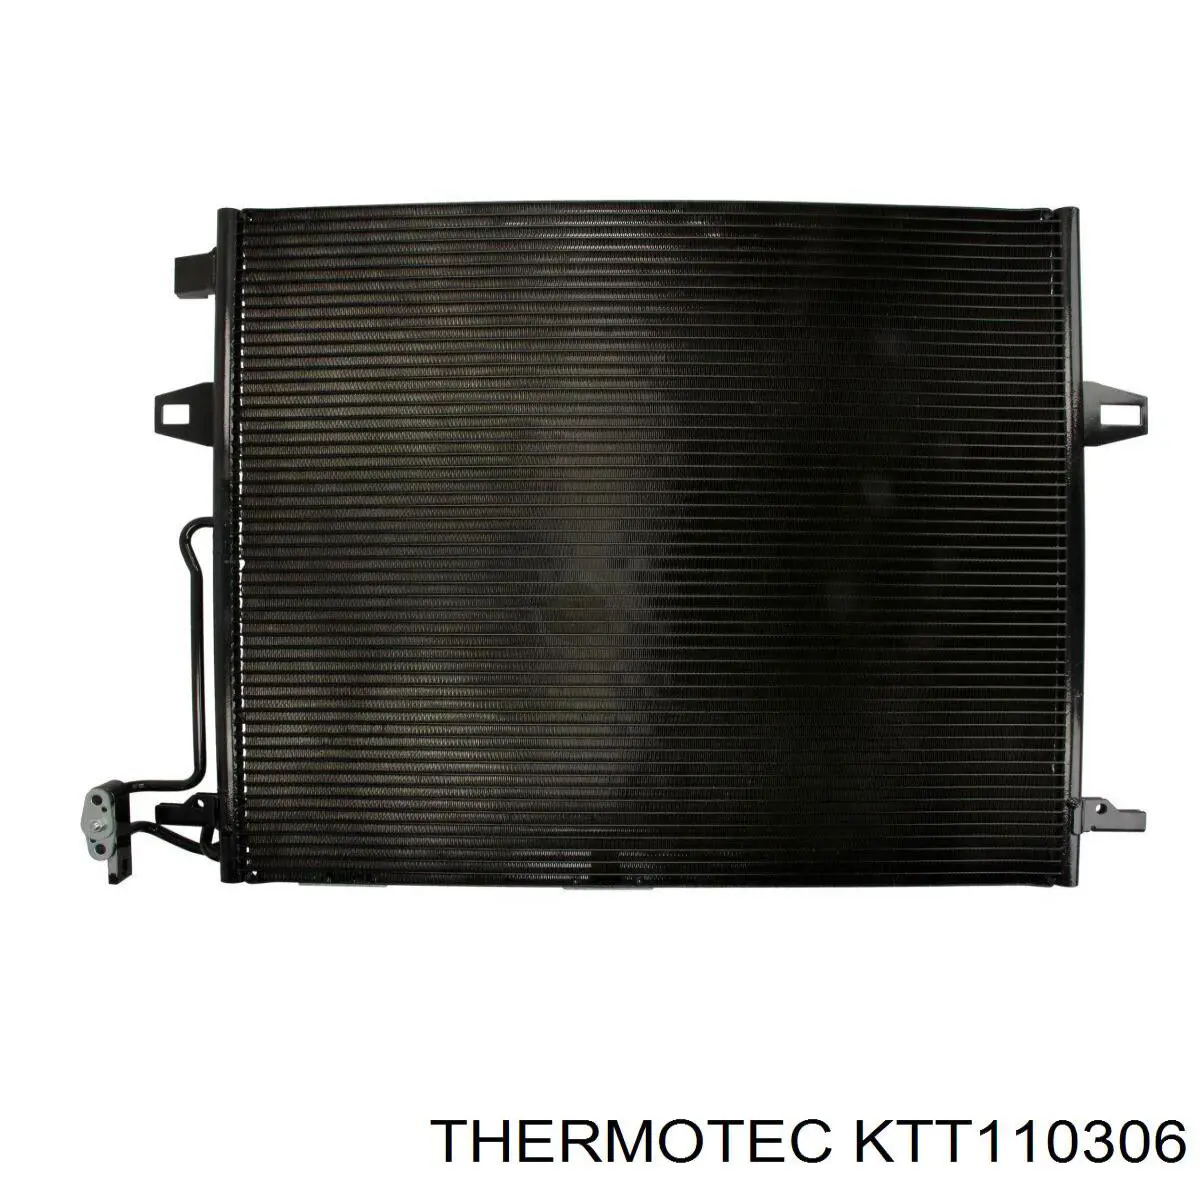 KTT110306 Thermotec condensador aire acondicionado